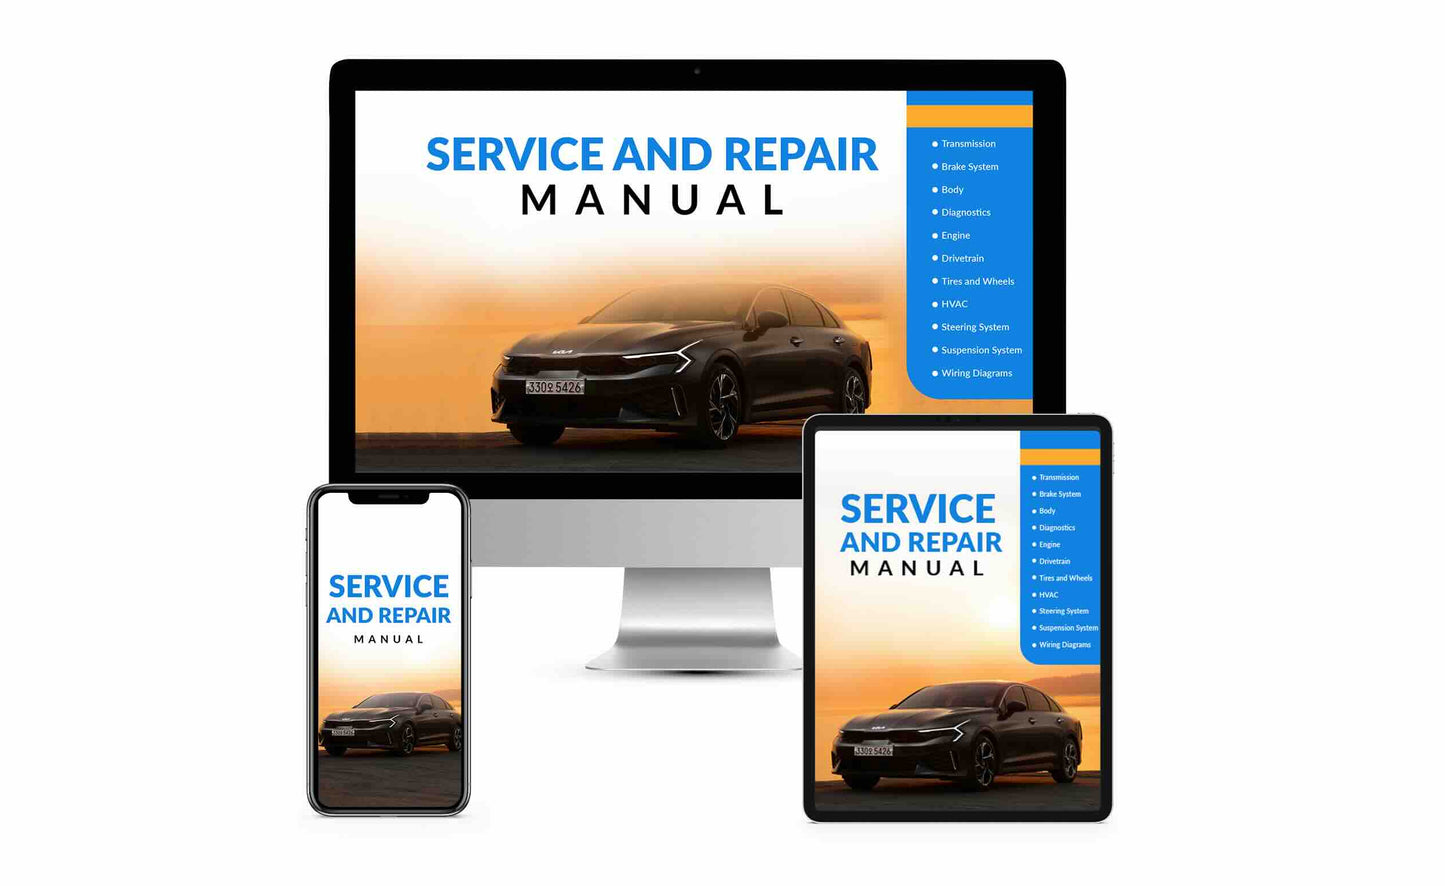 2010 TOYOTA Corolla OEM Service and Repair Workshop Manual